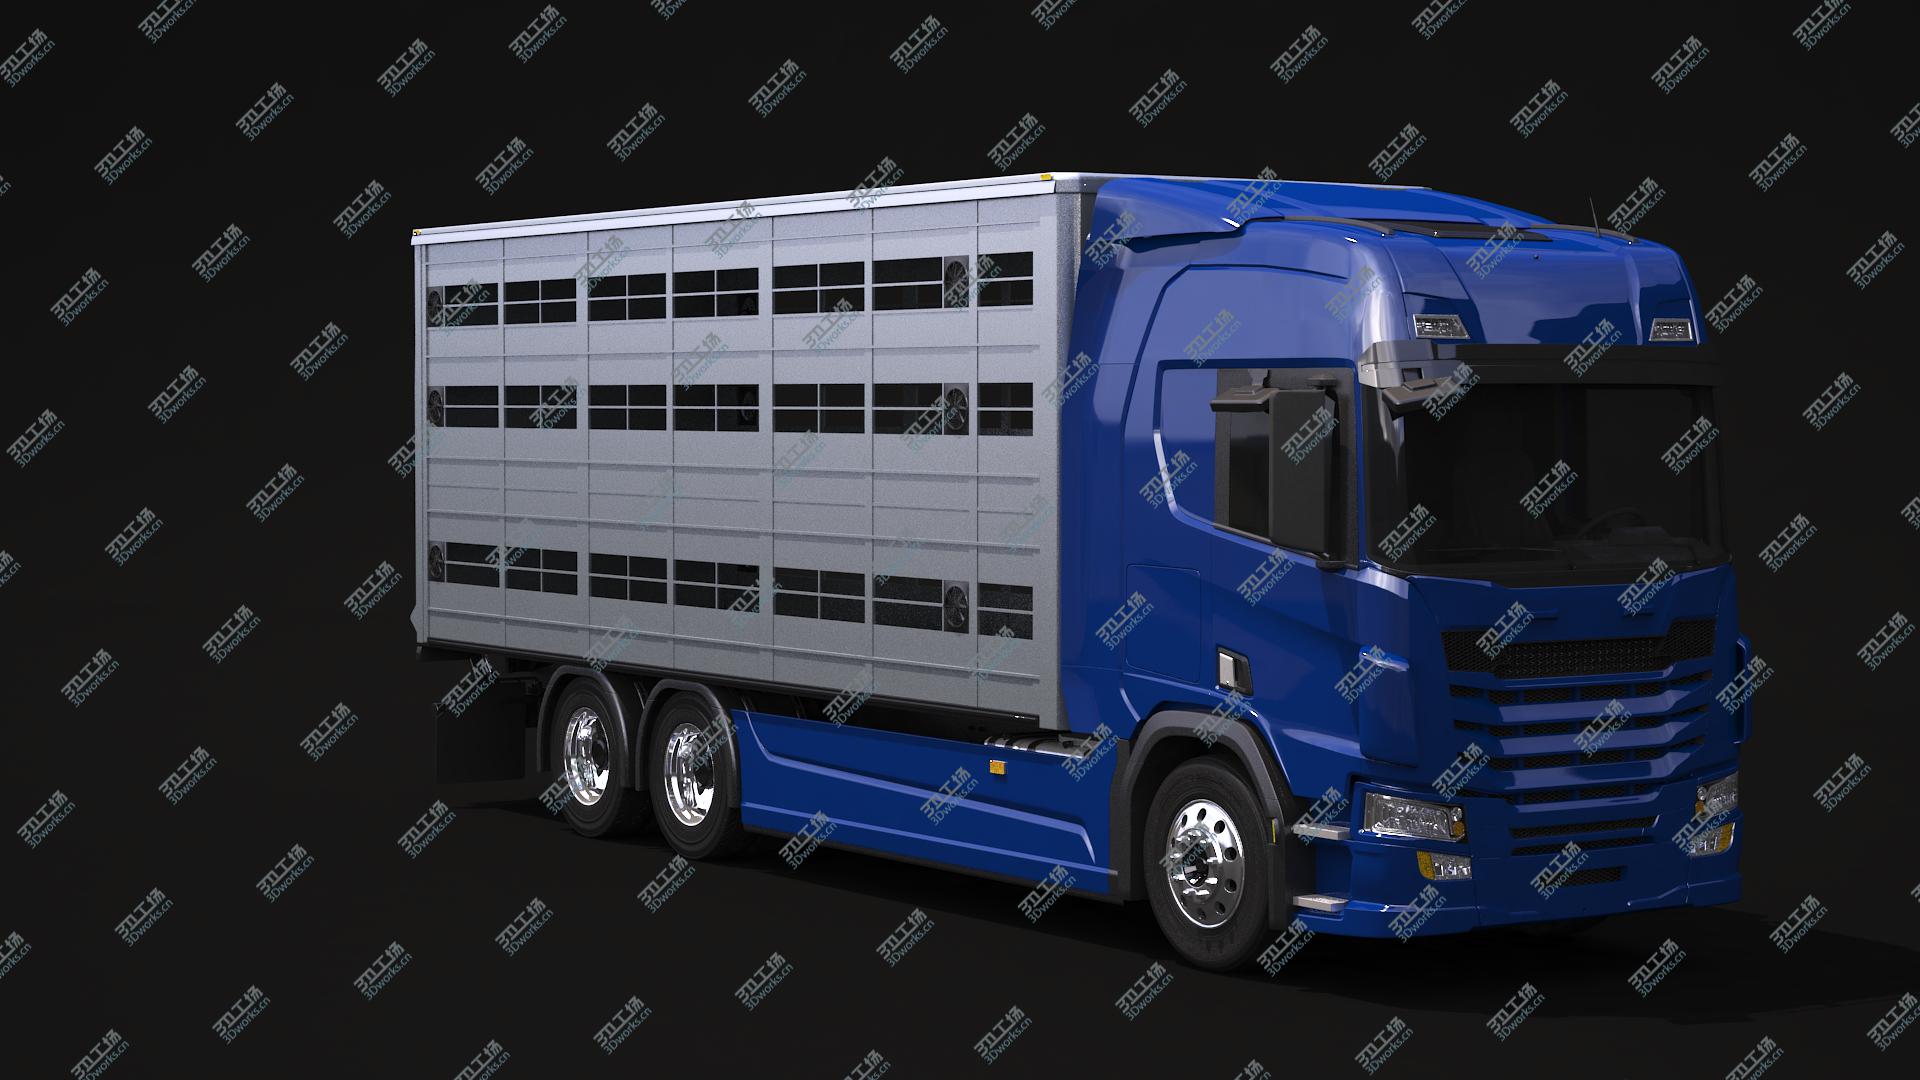 images/goods_img/202104092/3D model Liverstock Truck/4.jpg